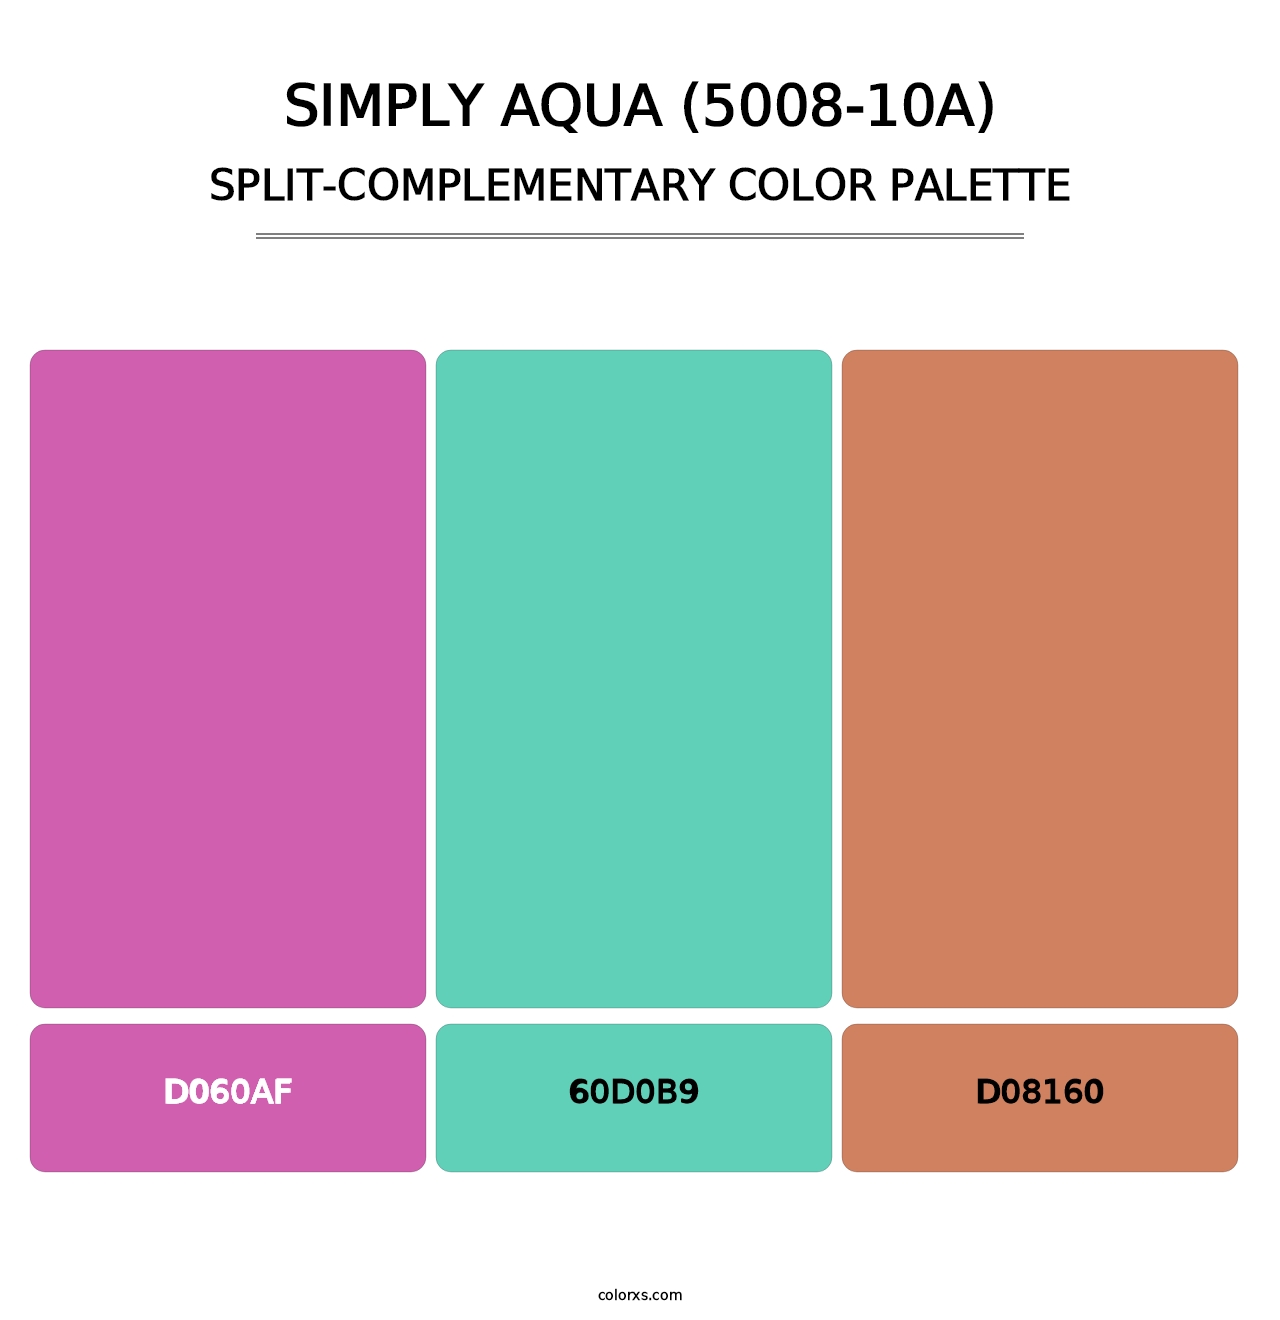 Simply Aqua (5008-10A) - Split-Complementary Color Palette